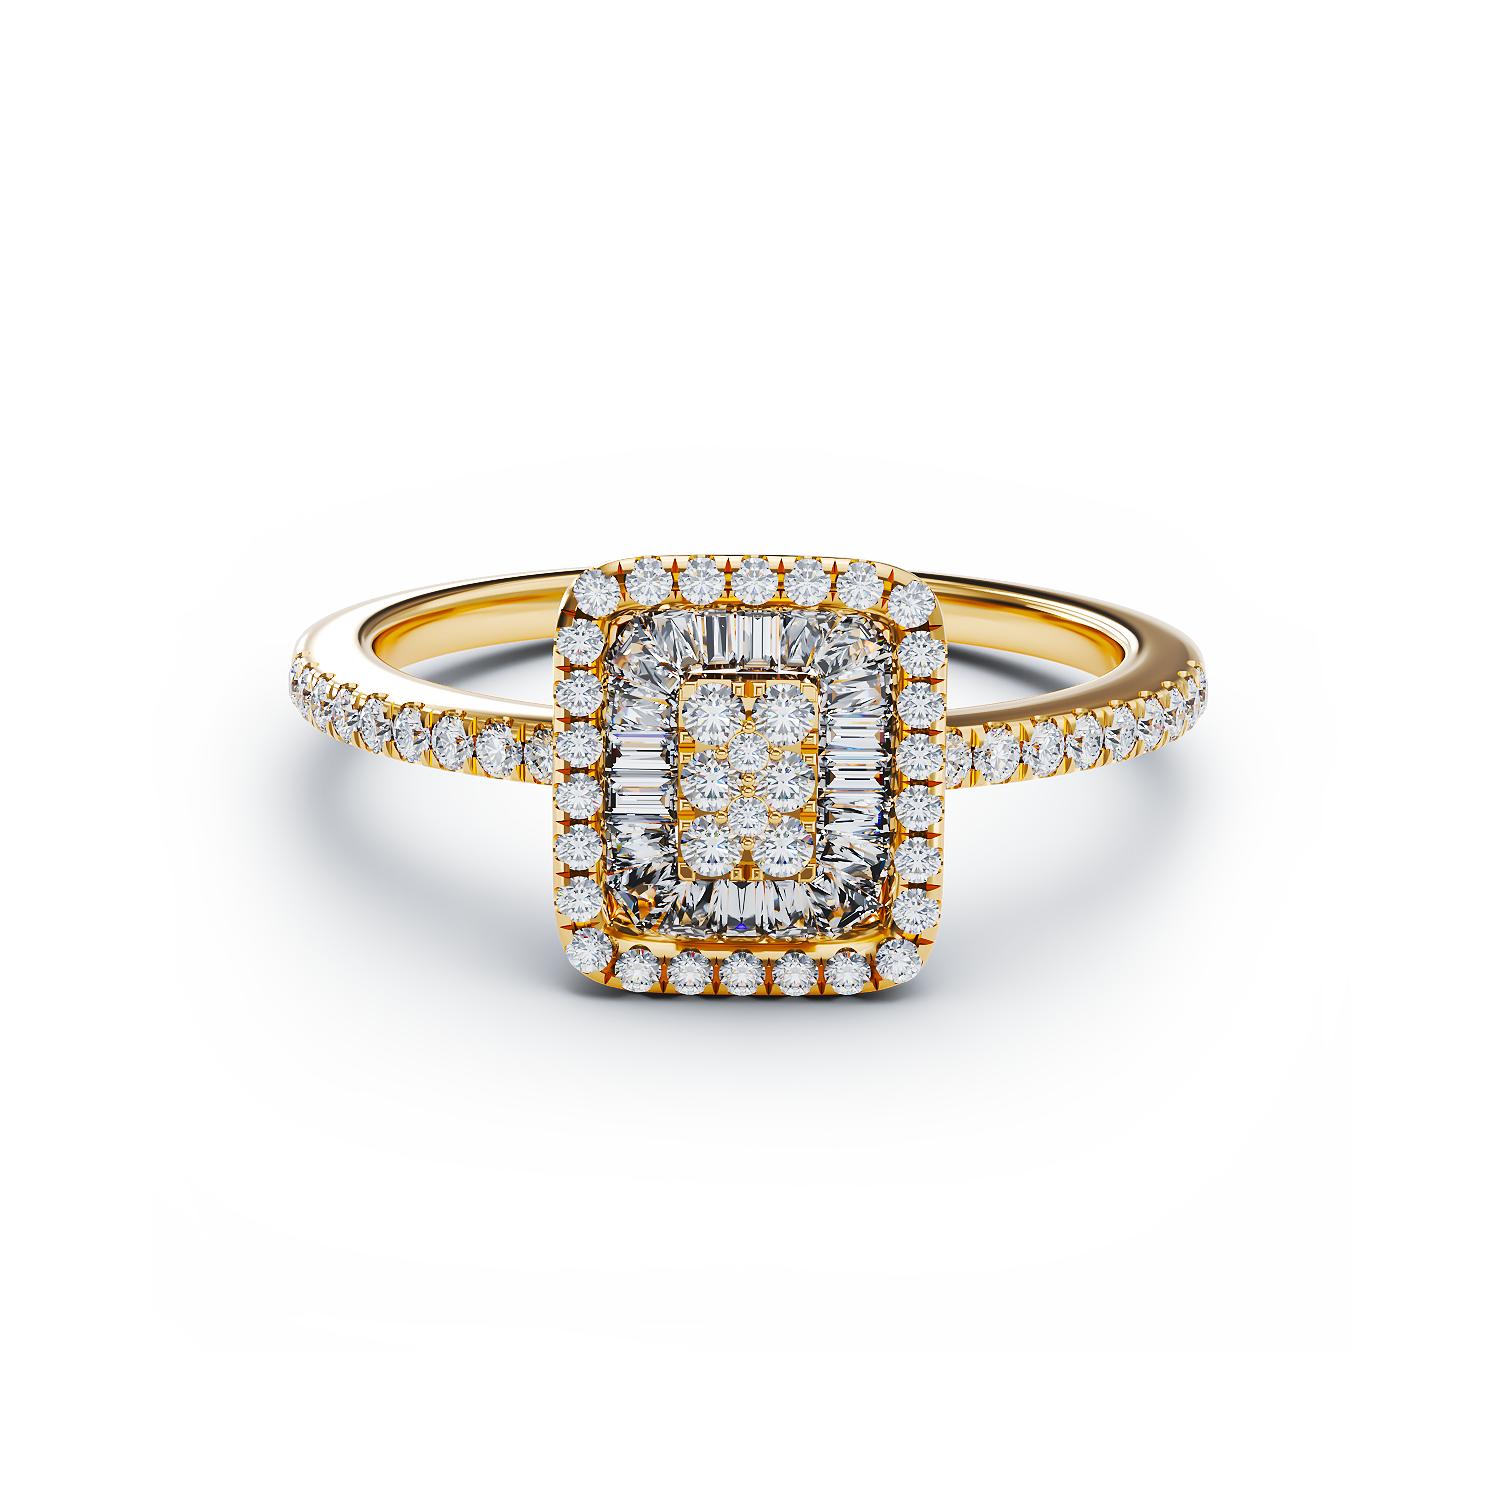 Eljegyzési gyűrű 18K-os sárga aranyból 0,12ct gyémánttal és 0,17ct gyémánttal. Gramm: 2,83